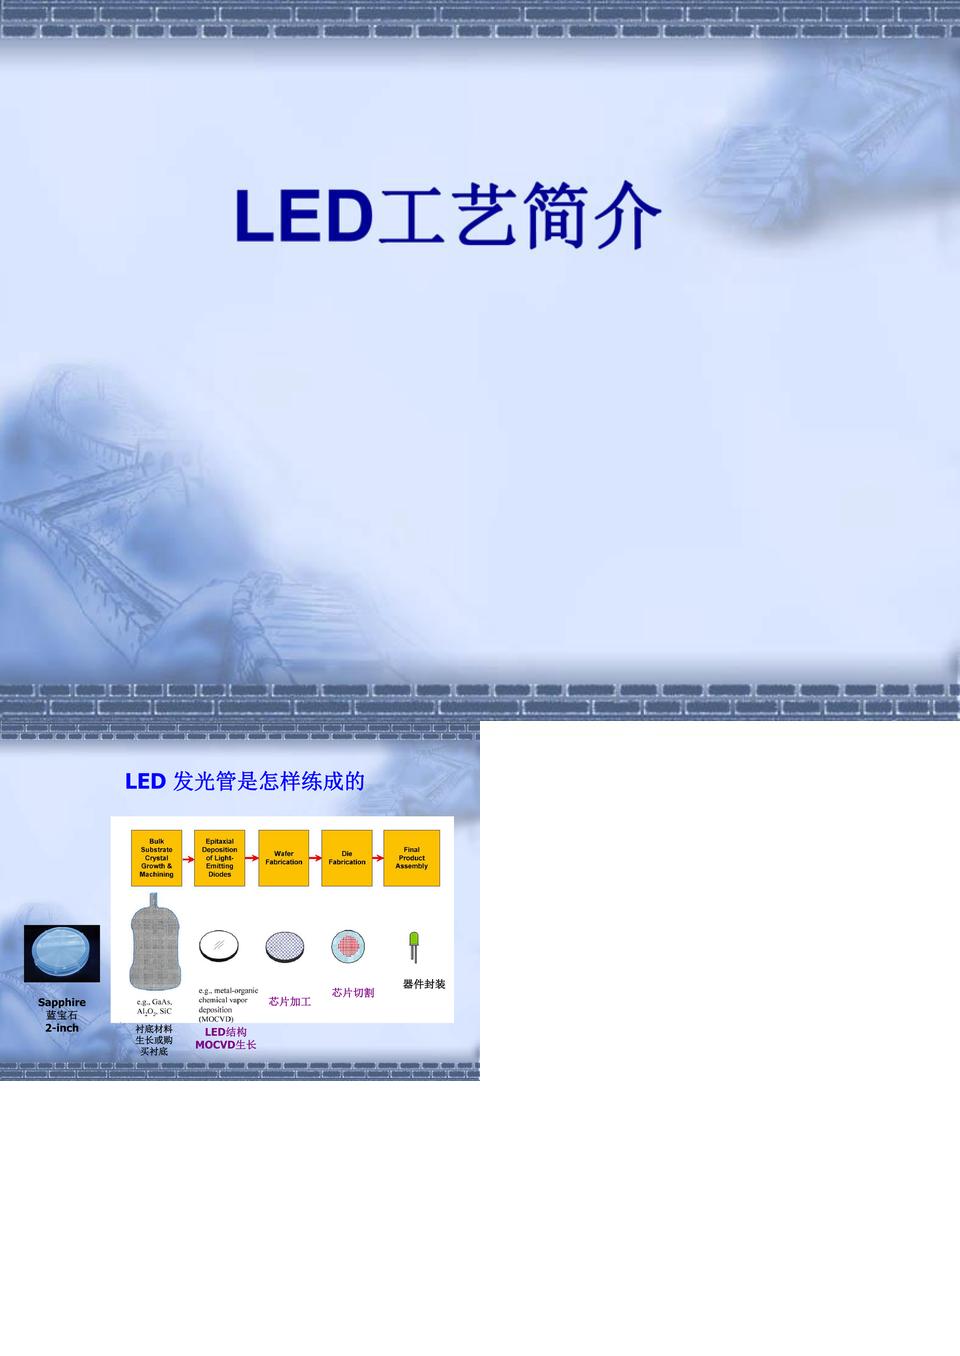 LED工艺简介